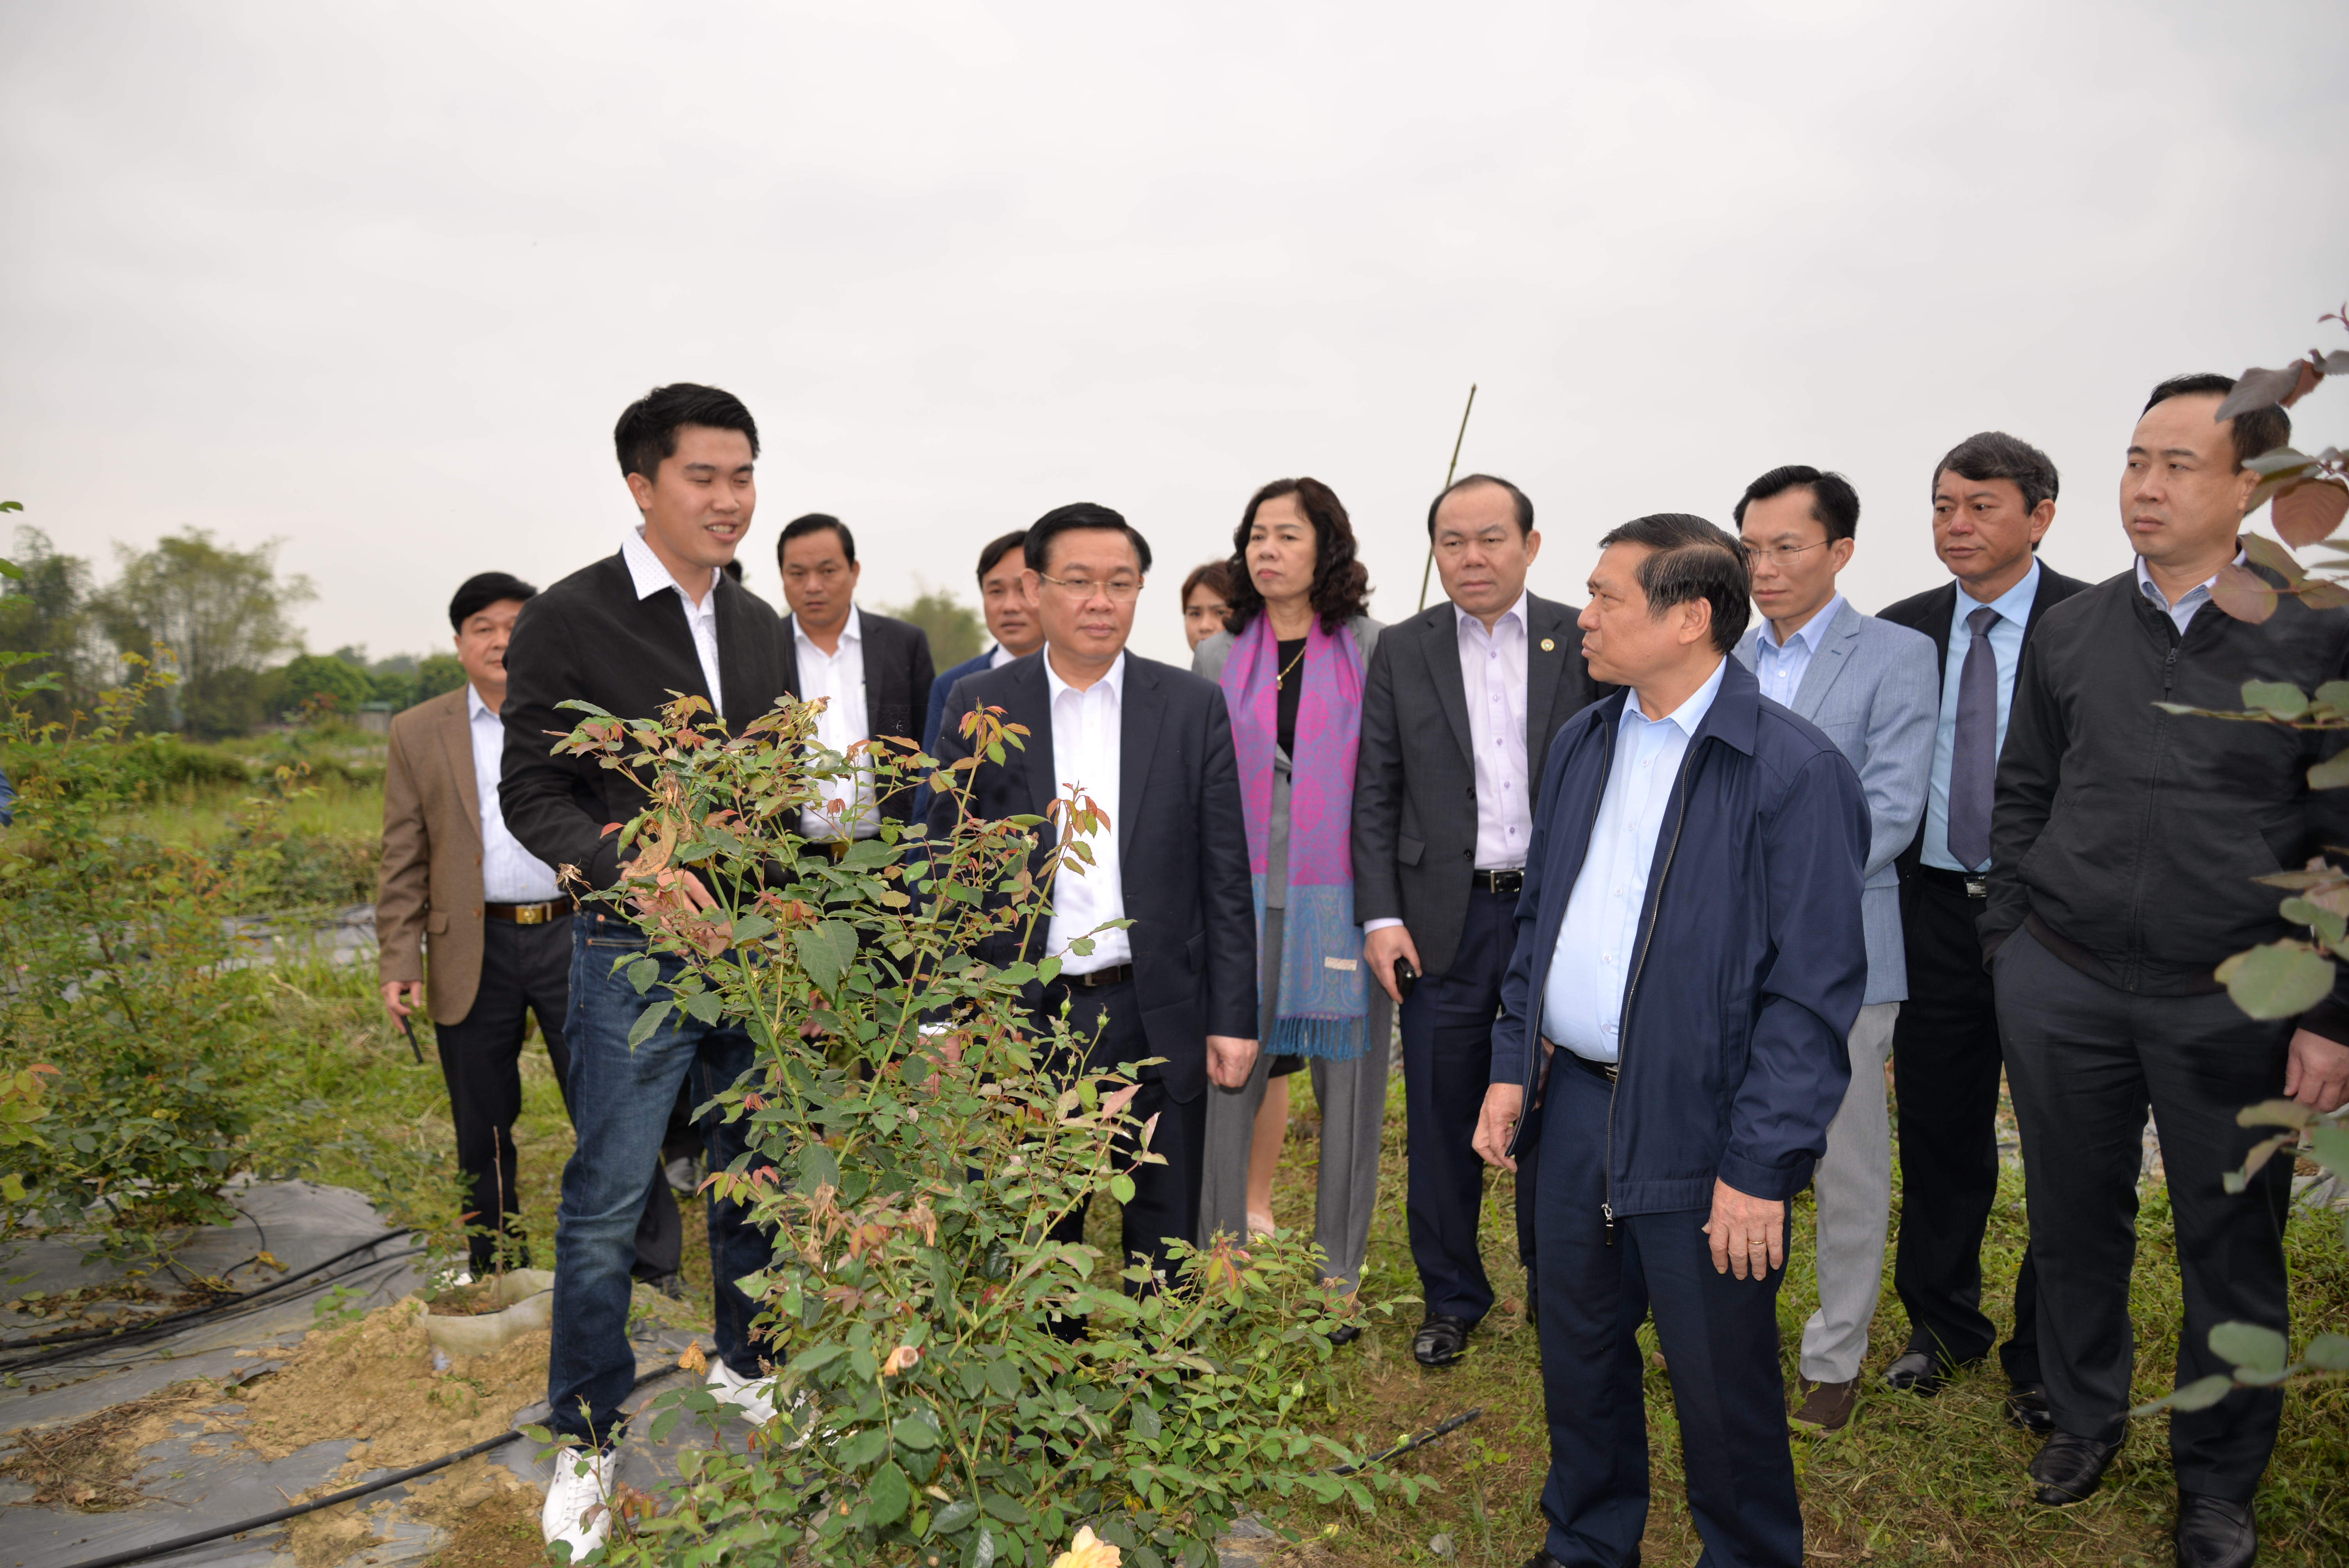 Phó thủ tướng Vương Đình Huệ thăm, làm việc tại tỉnh Cao Bằng - Hình 6